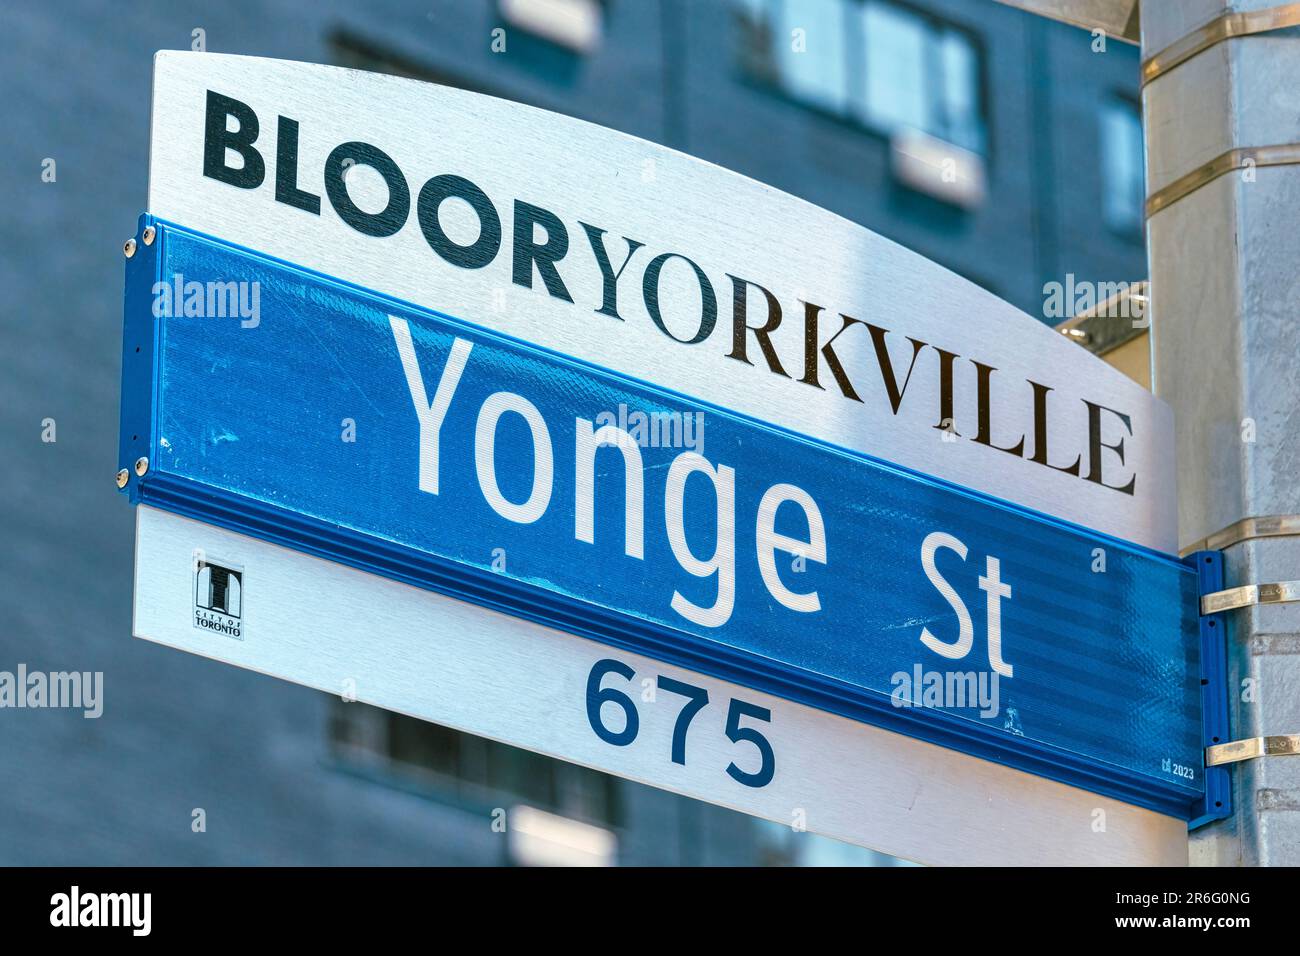 Toronto, Canada - 4 juin 2023 : panneau Blooryorkville Yonge St 675. Un grand bâtiment est en arrière-plan. Banque D'Images